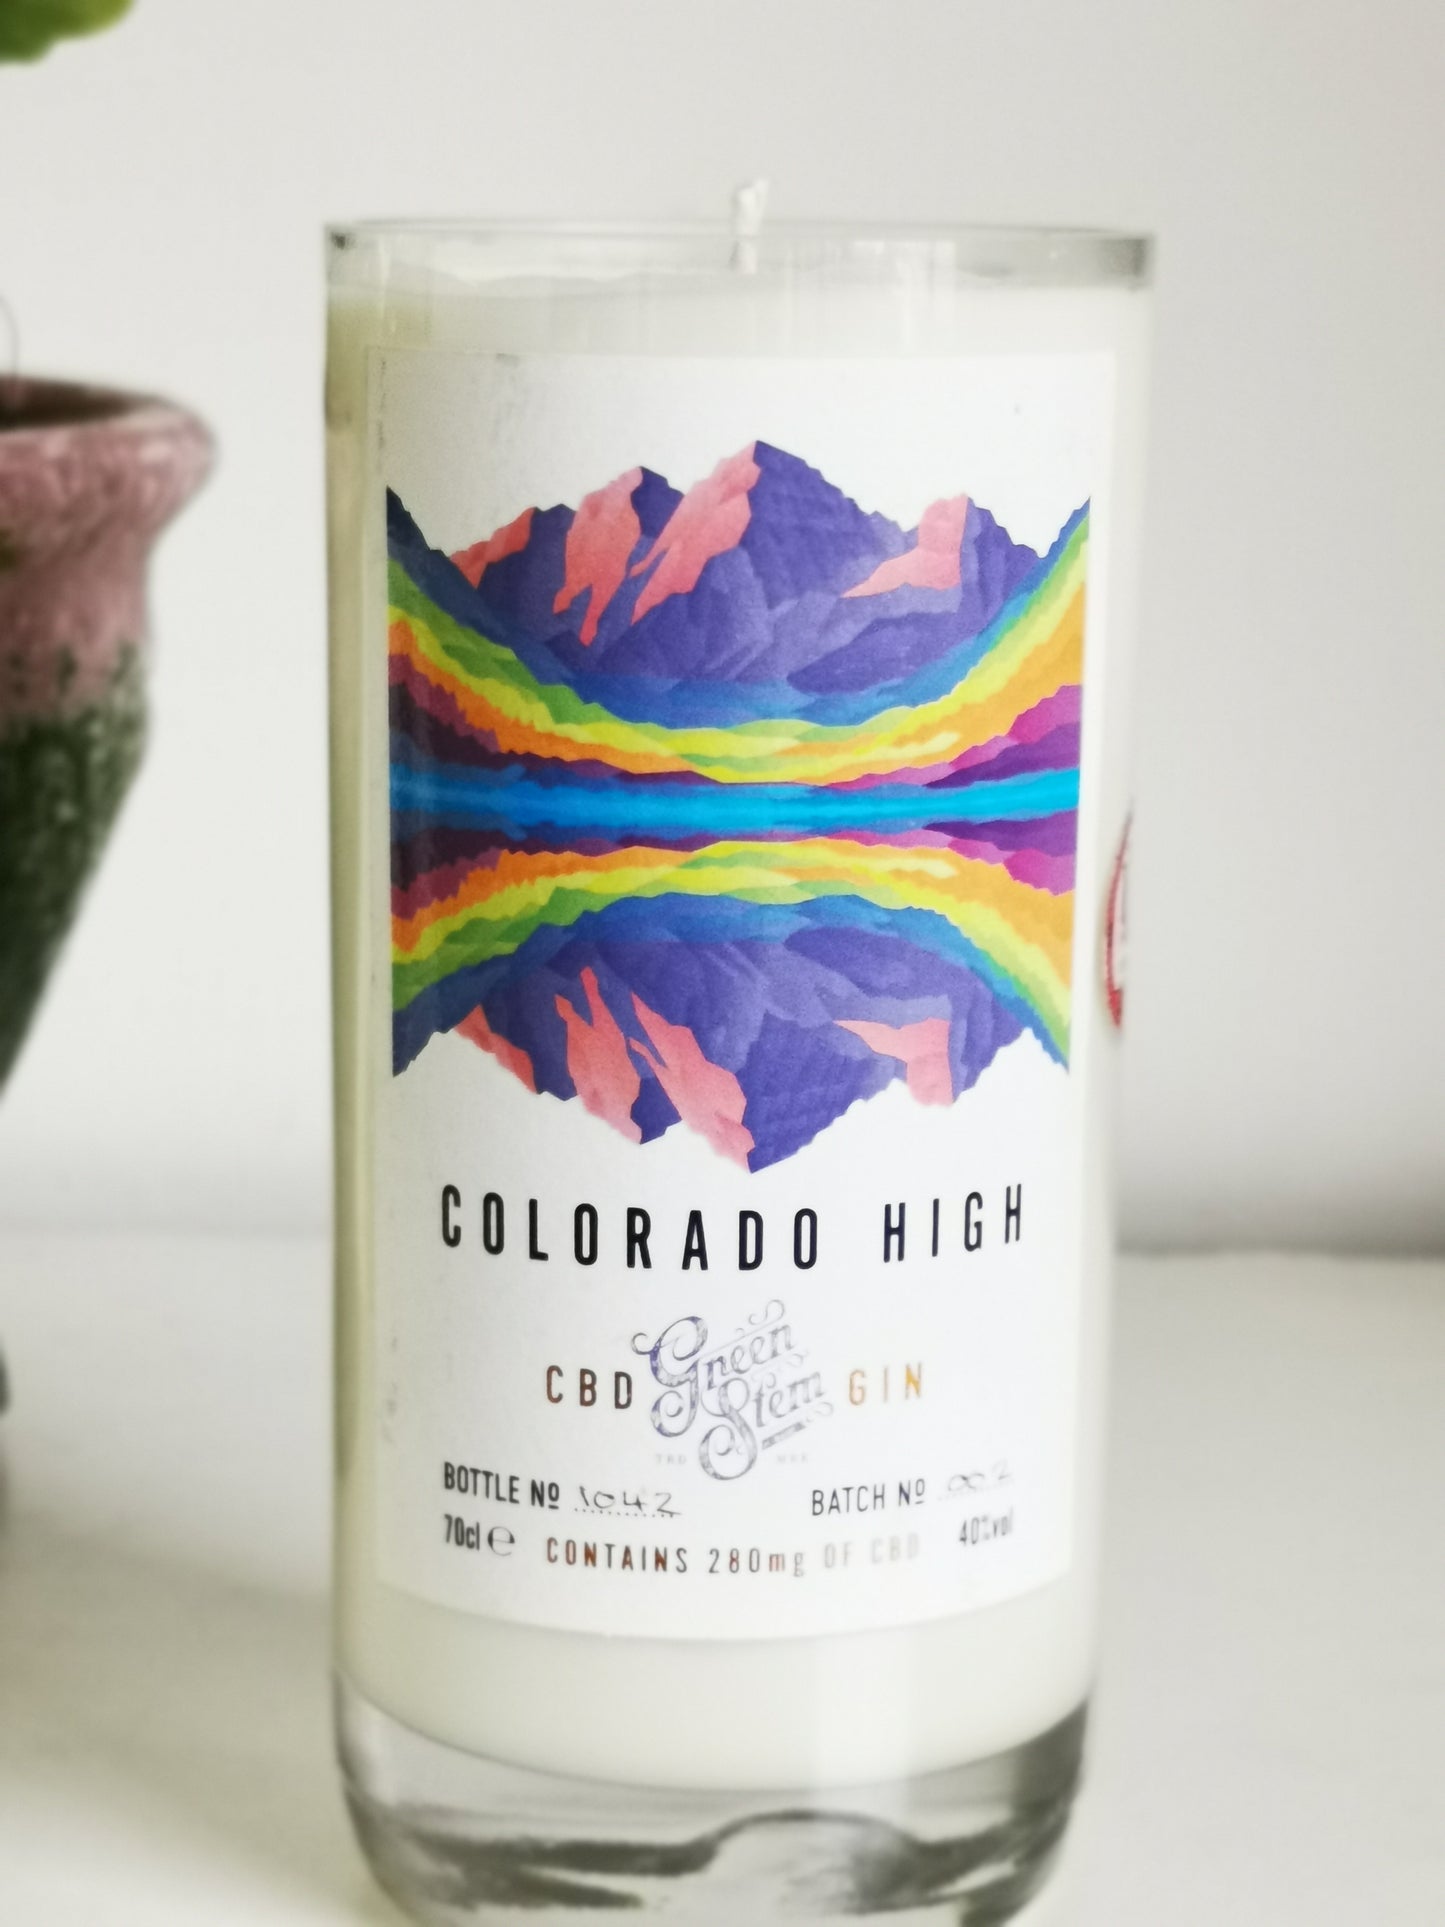 Colorado High CBD Gin Bottle Candle